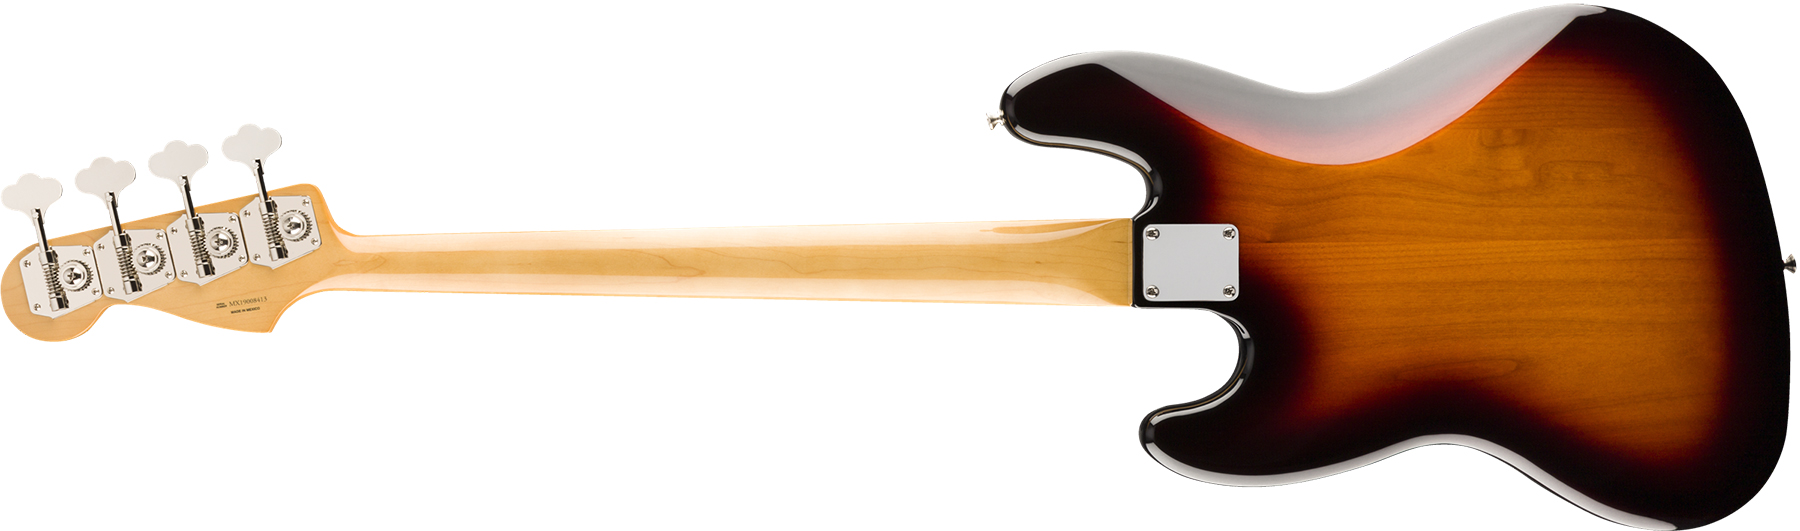 Fender Jazz Bass 60s Vintera Vintage Mex Pf - 3-color Sunburst - Solidbody E-bass - Variation 1